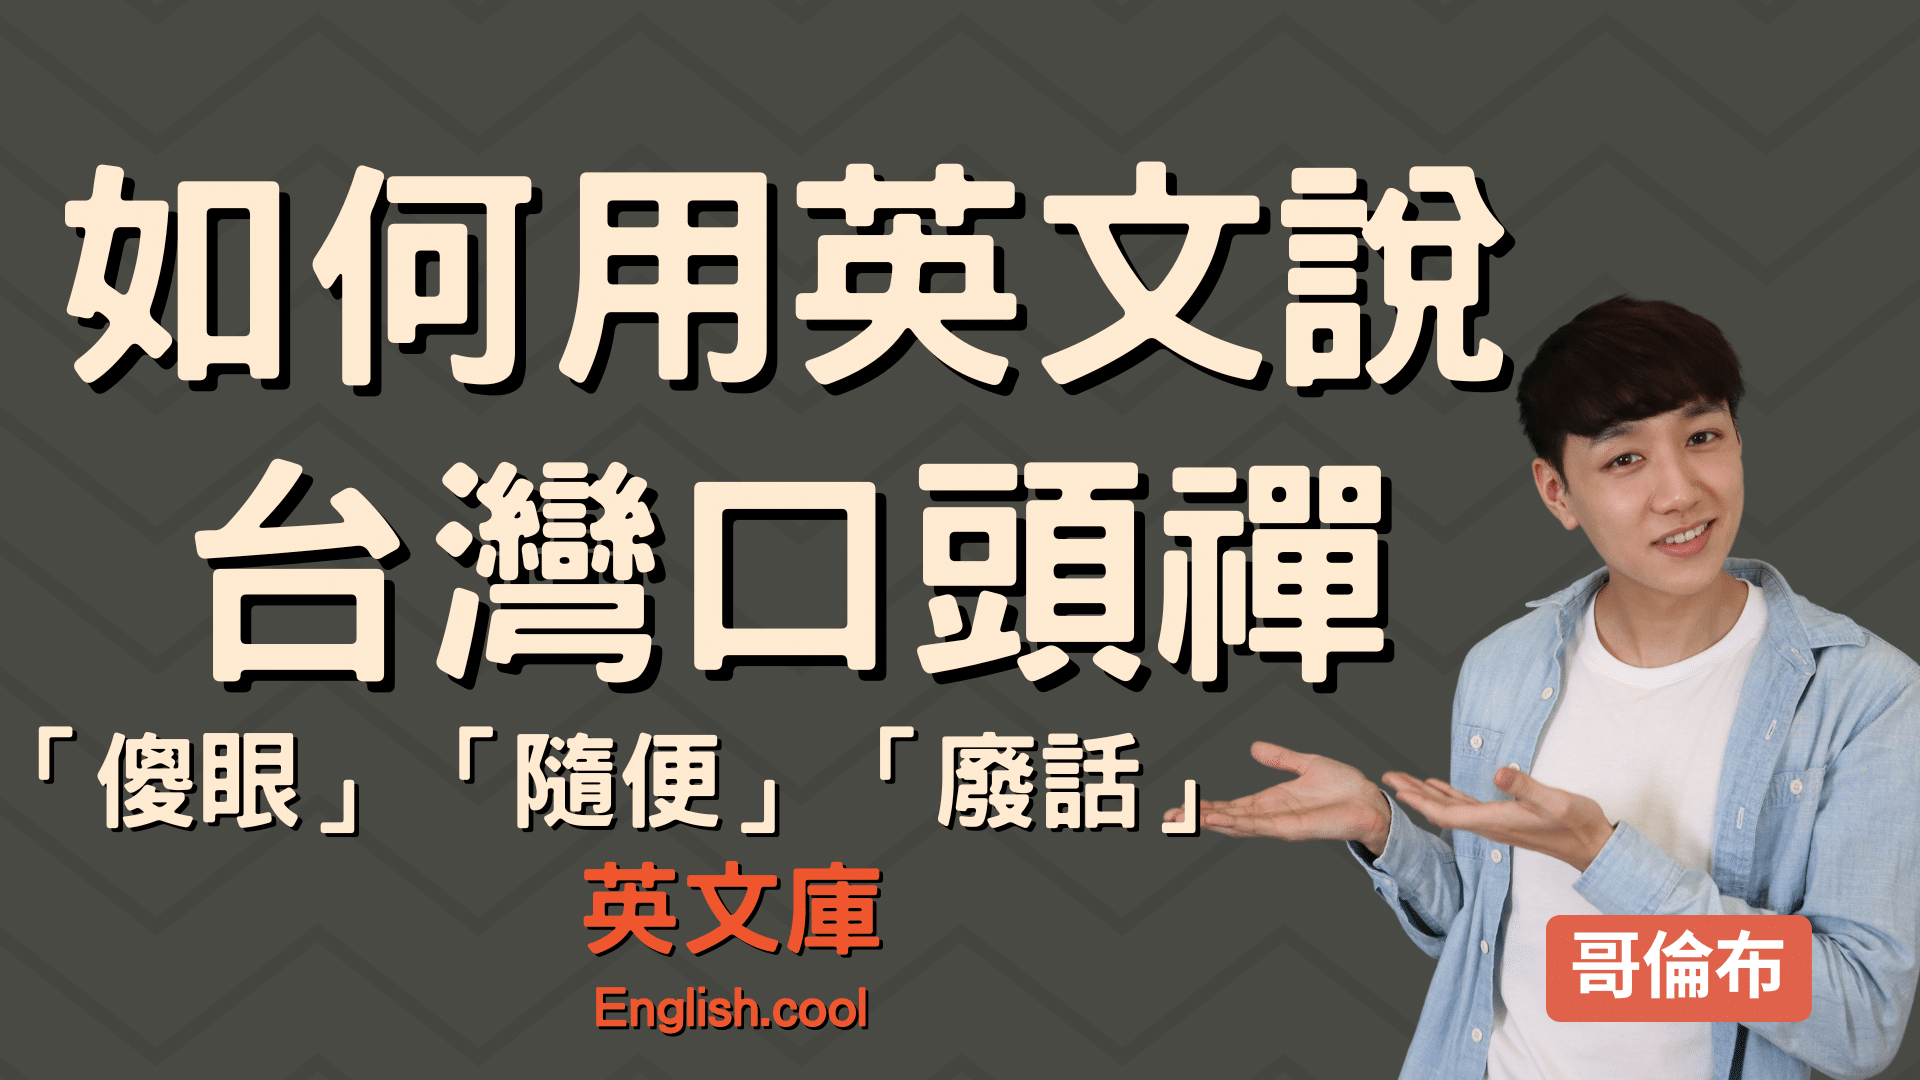 You are currently viewing 「傻眼」、「隨便」、「廢話」 英文怎麼說？ 各種台灣口頭禪英文翻譯！